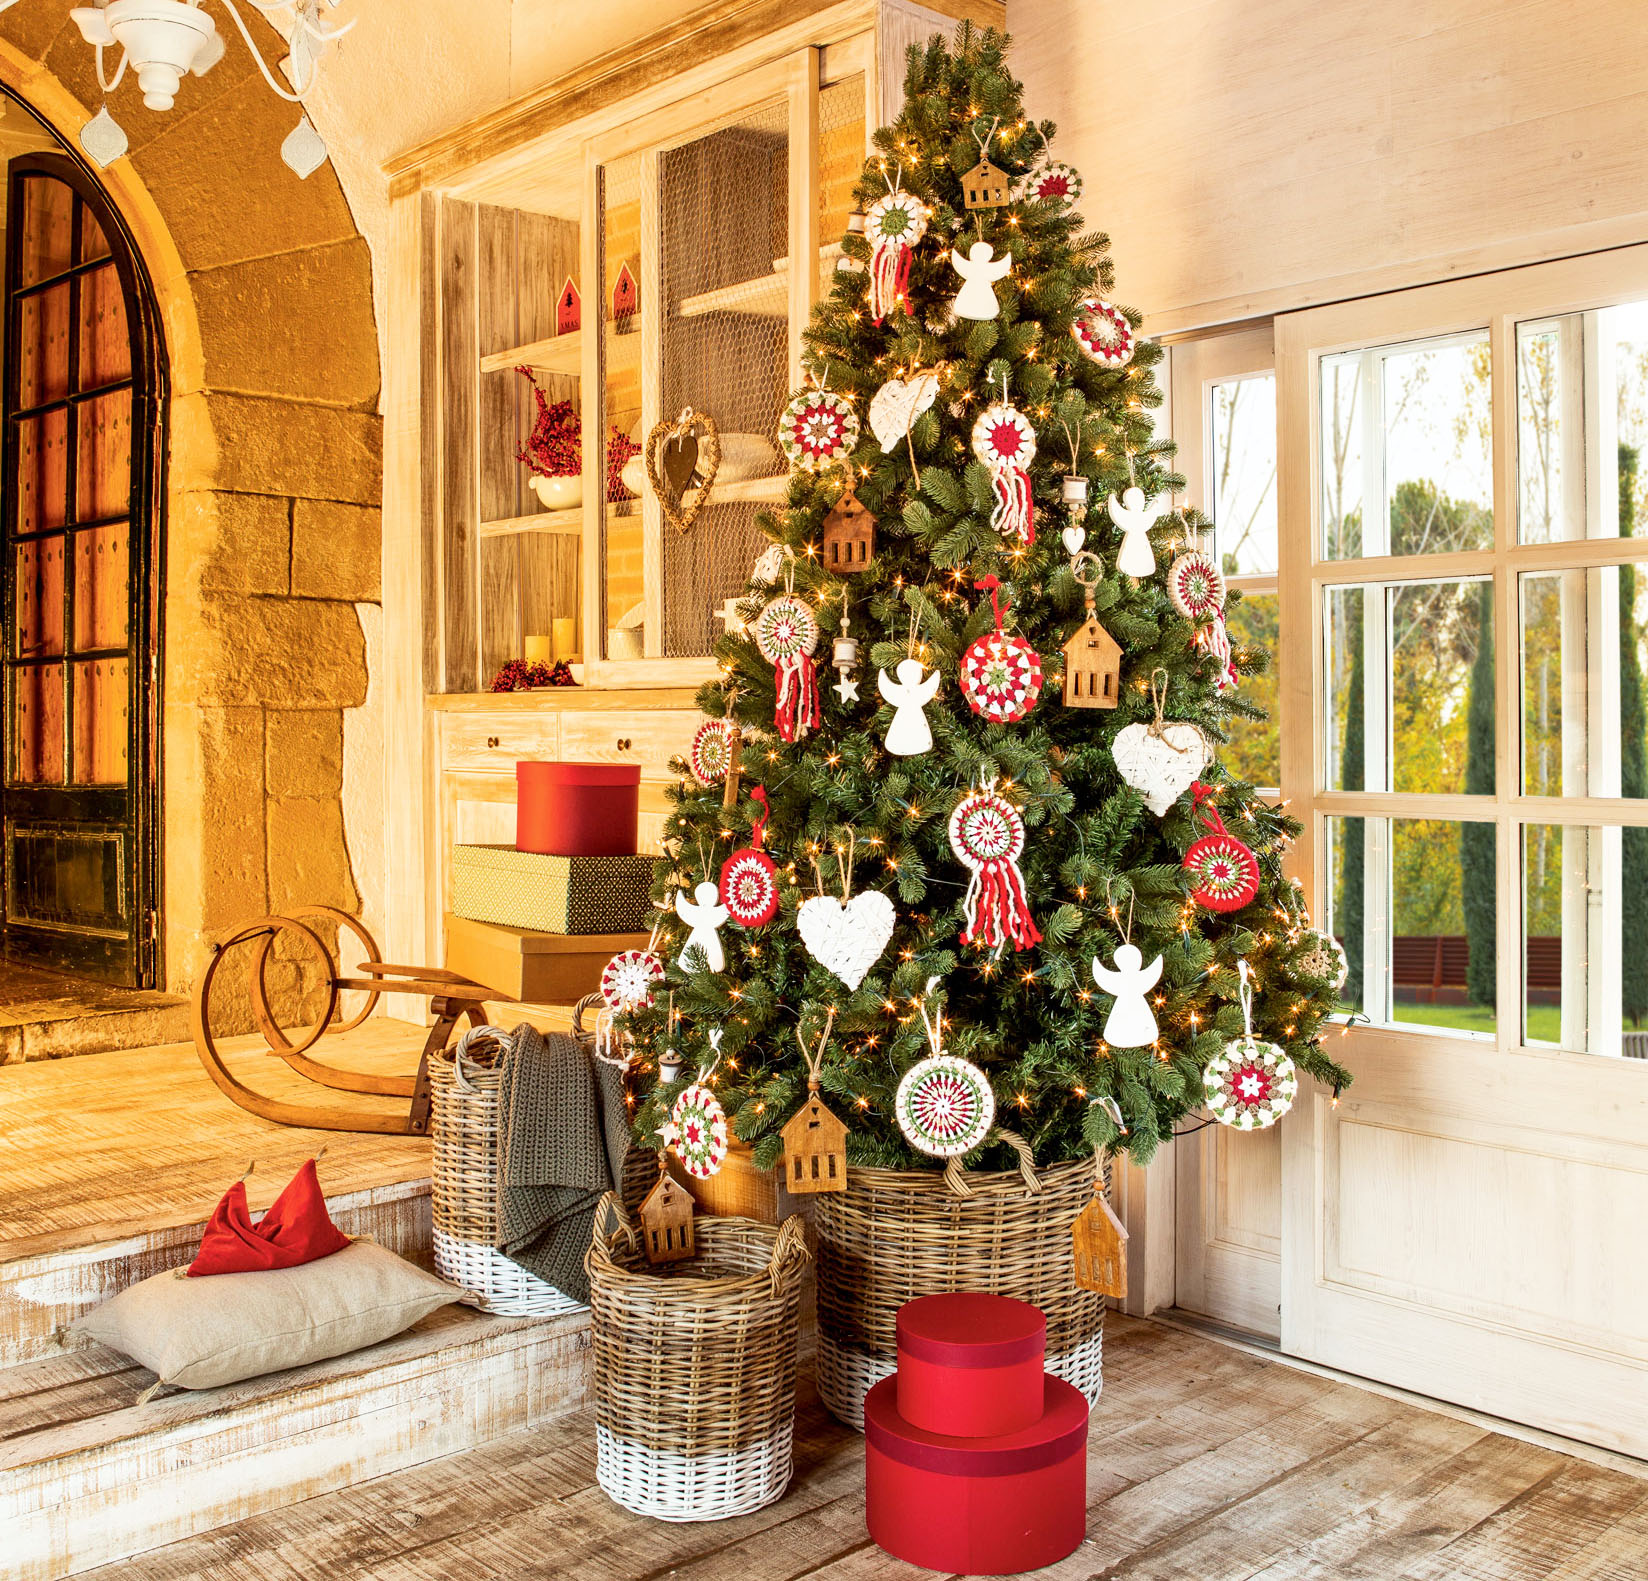 Recibidor con suelo de madera y árbol de Navidad en cesta con adornos navideños a ganchillo. 